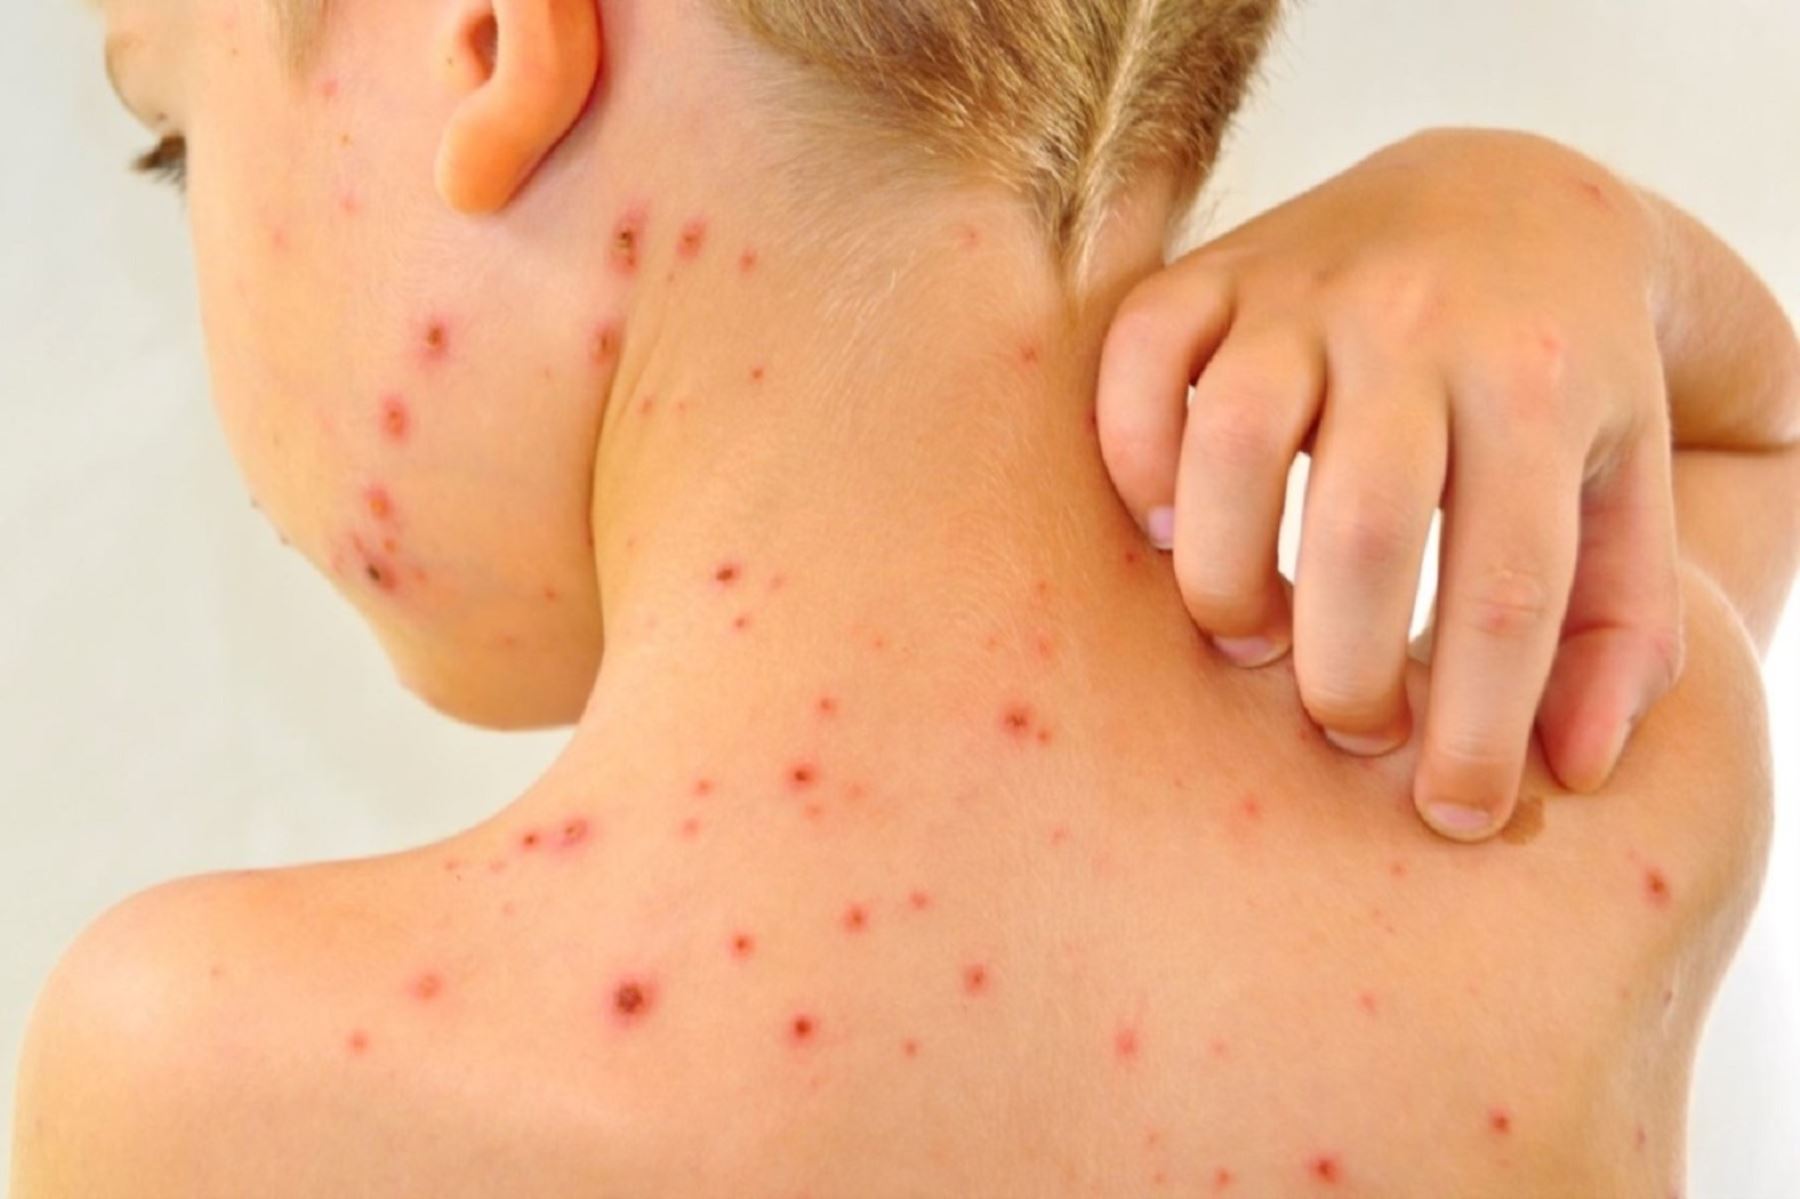 Casos de varicela aumentarían por incremento de temperatura: ¿Qué cuidados debes tener si tu hijo se contagia?